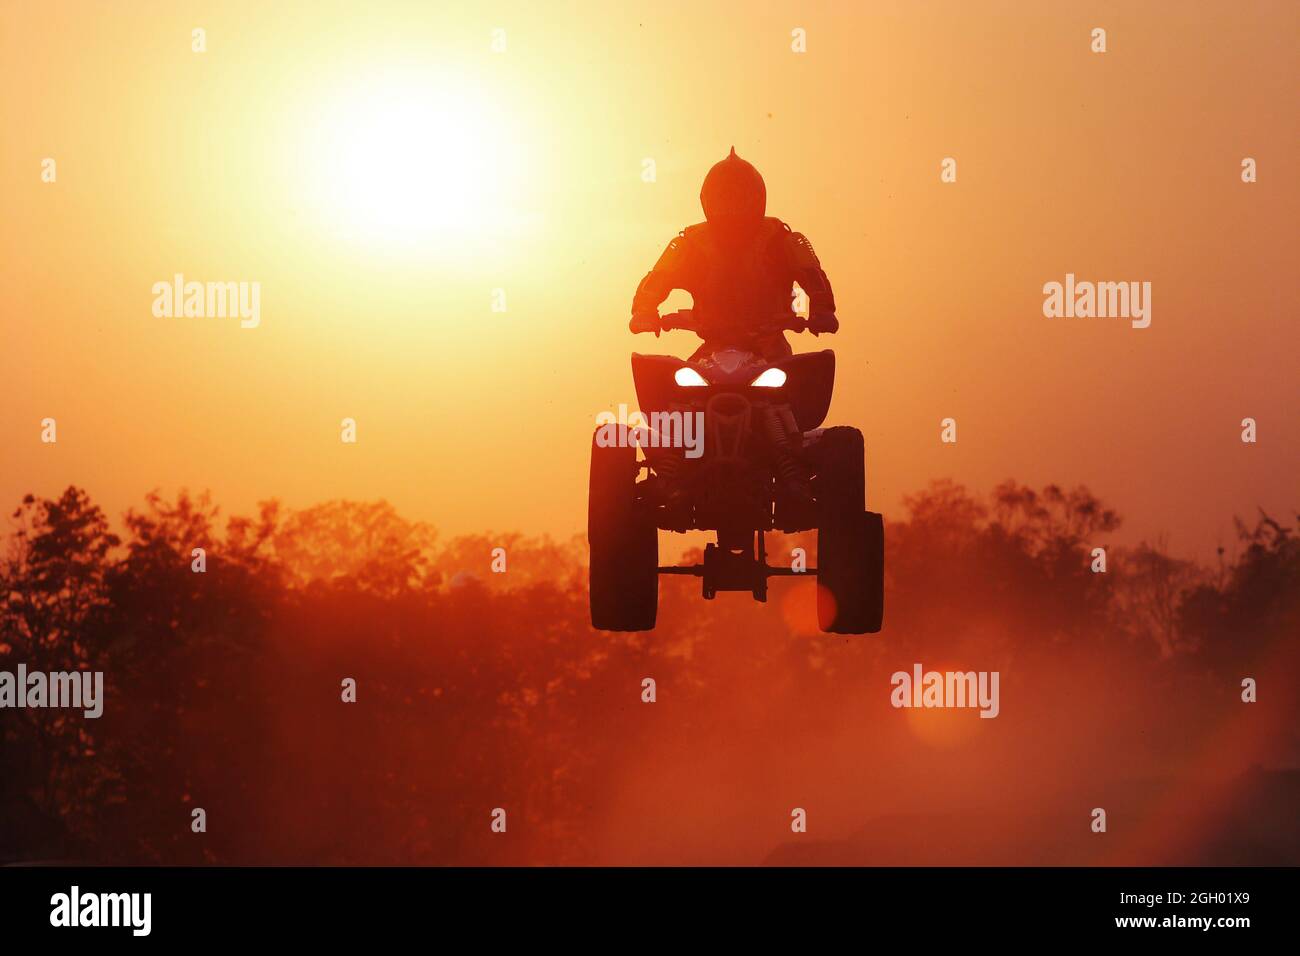 Silhouette ATV jump Stock Photo